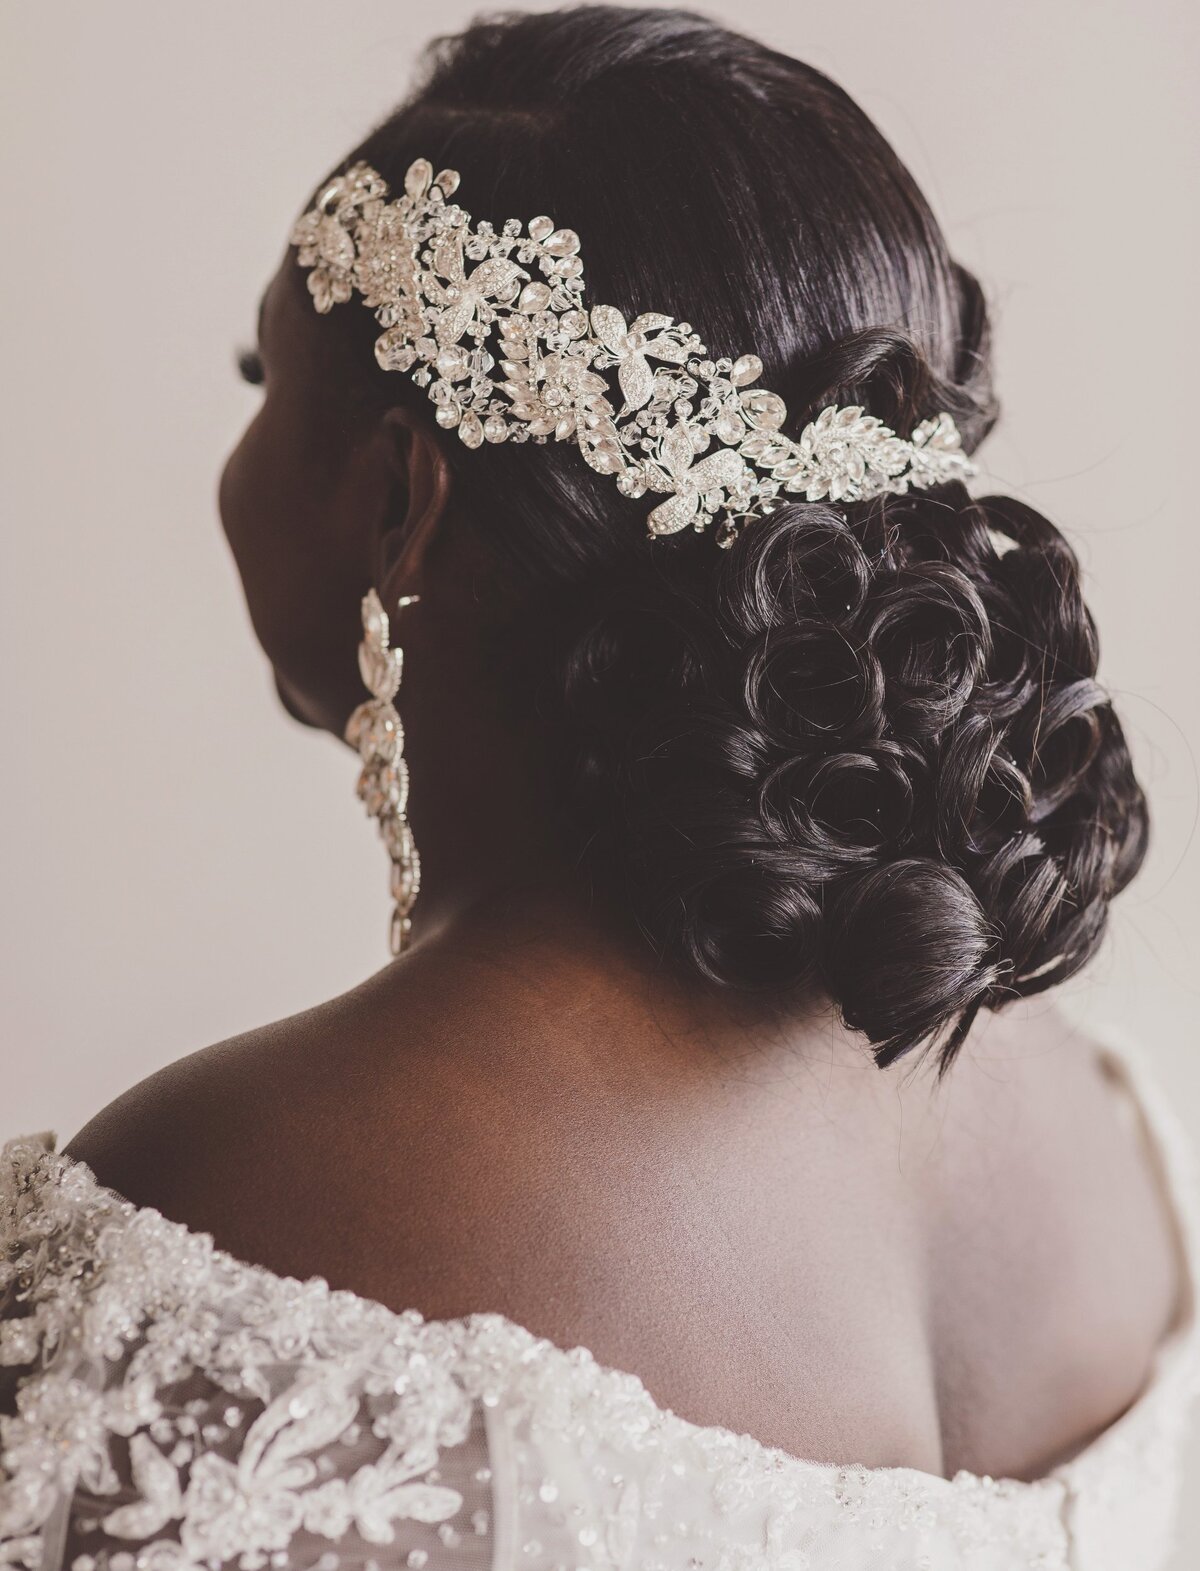 Close up of brides hair at wedding